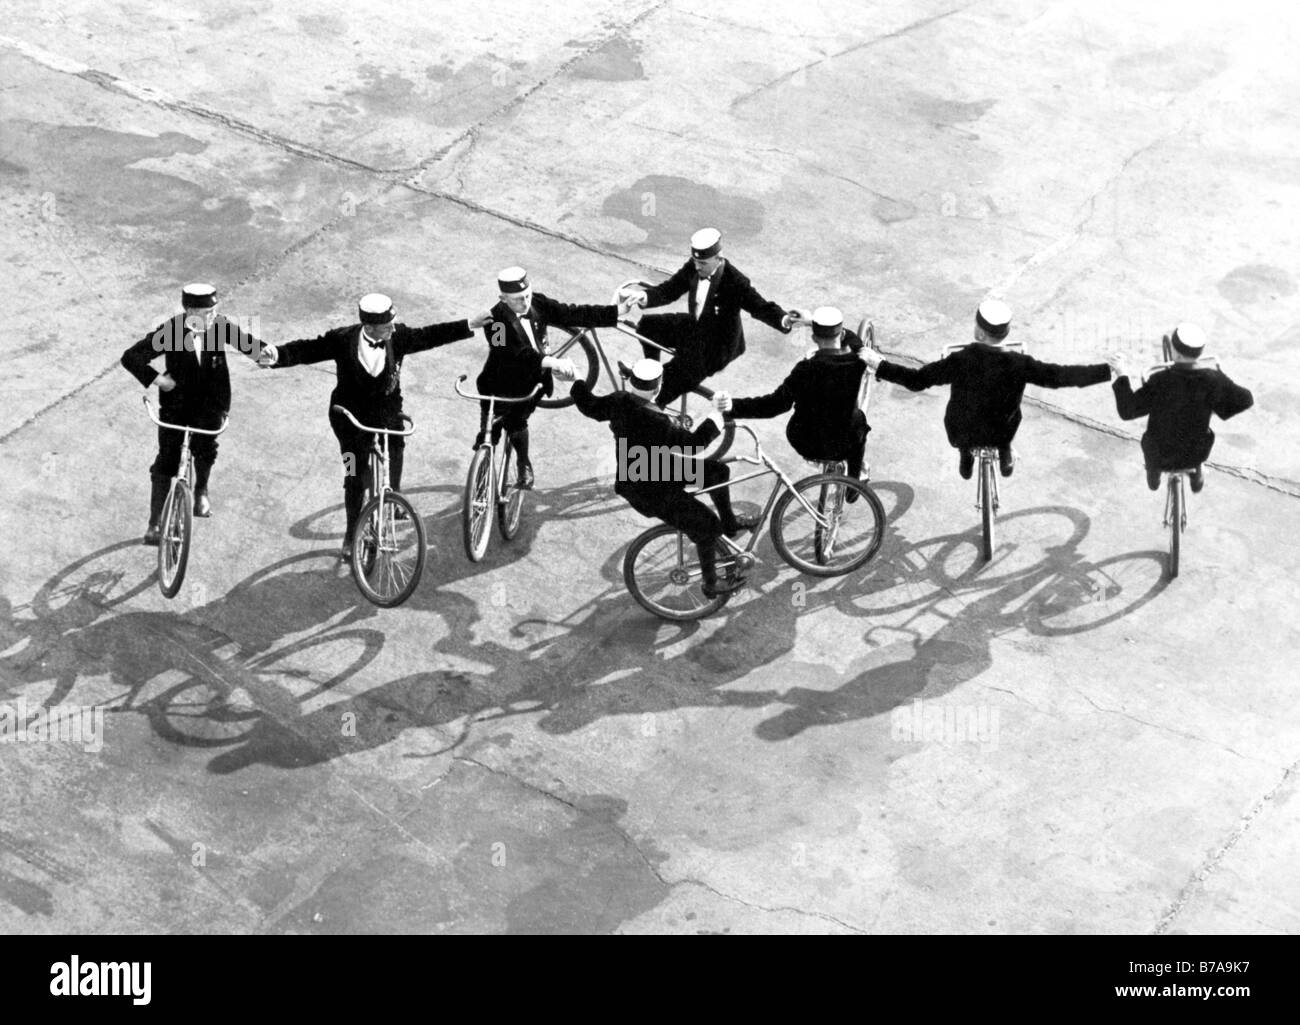 Historic picture, acrobats riding bikes, taken around 1925 Stock Photo